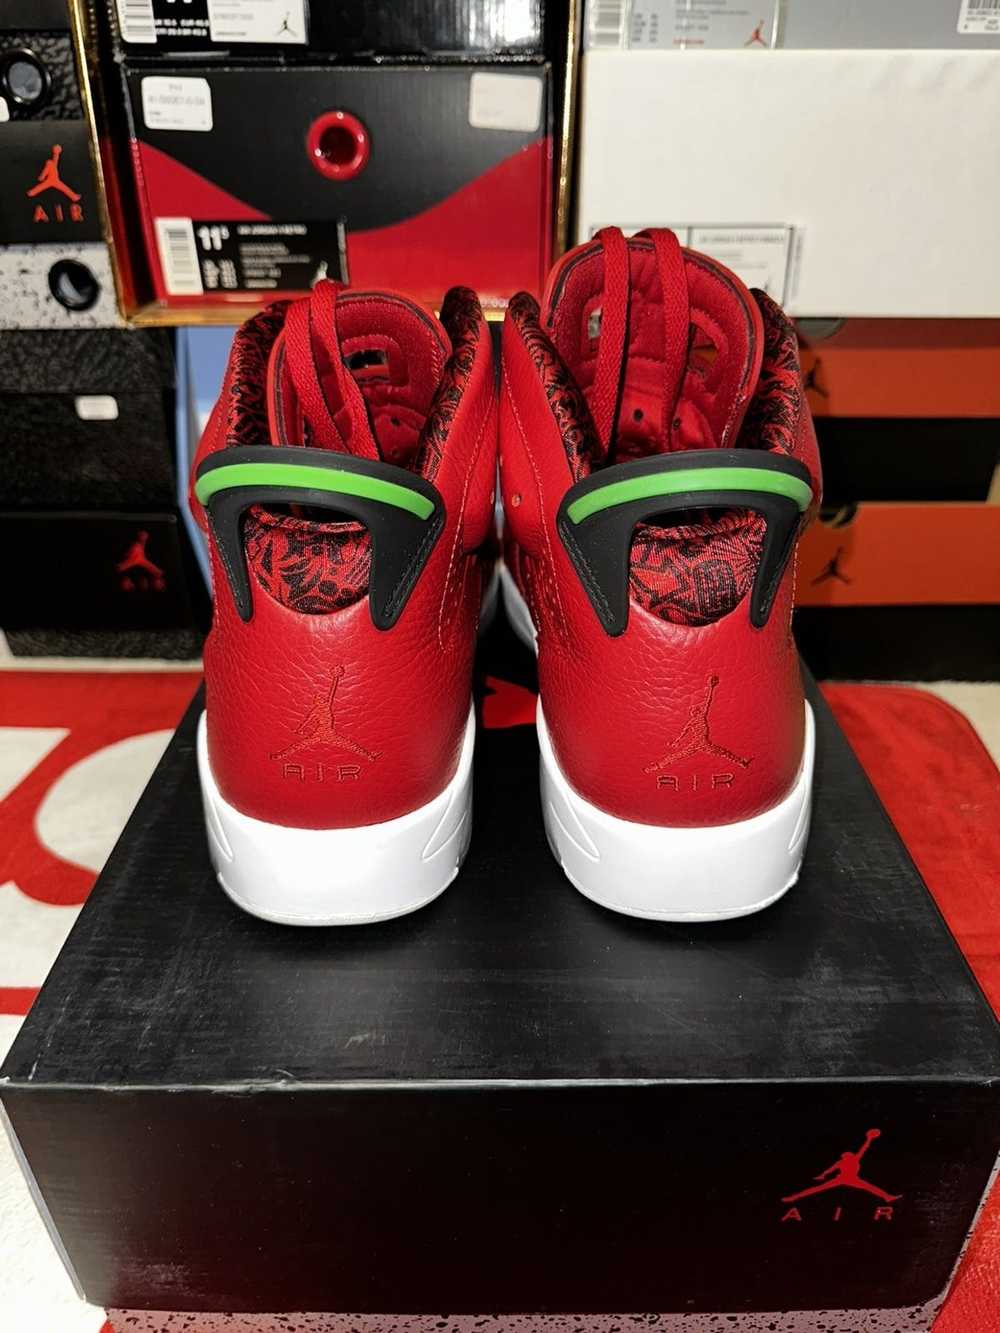 Jordan Brand × Nike Air Jordan 6 “Spizike” - image 3